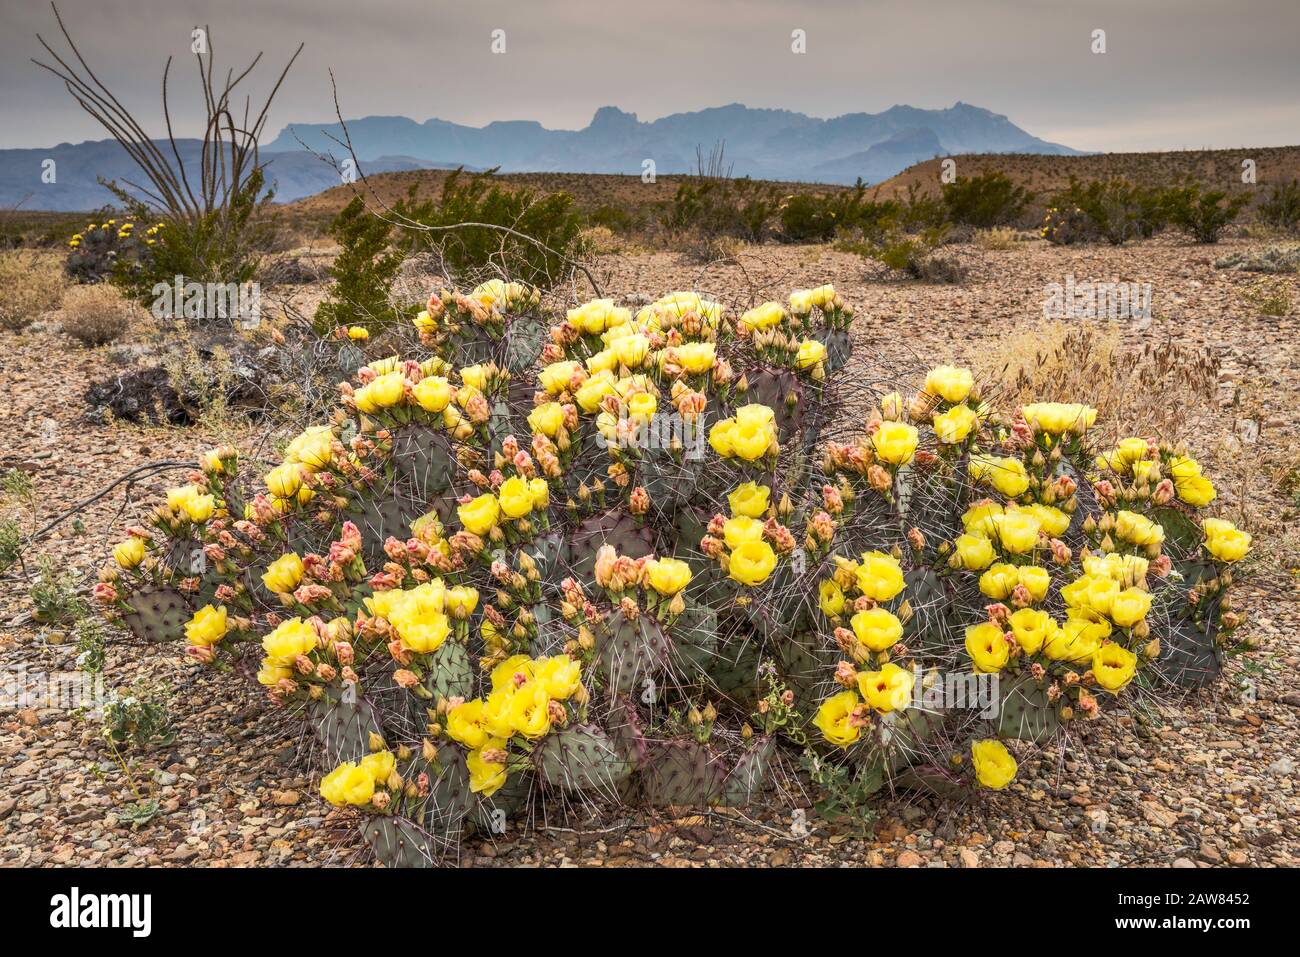 Pirouette de cactus en fleur, montagnes de Chisos à distance, désert de Chihuahuan, parc national de Big Bend, Texas, États-Unis Banque D'Images